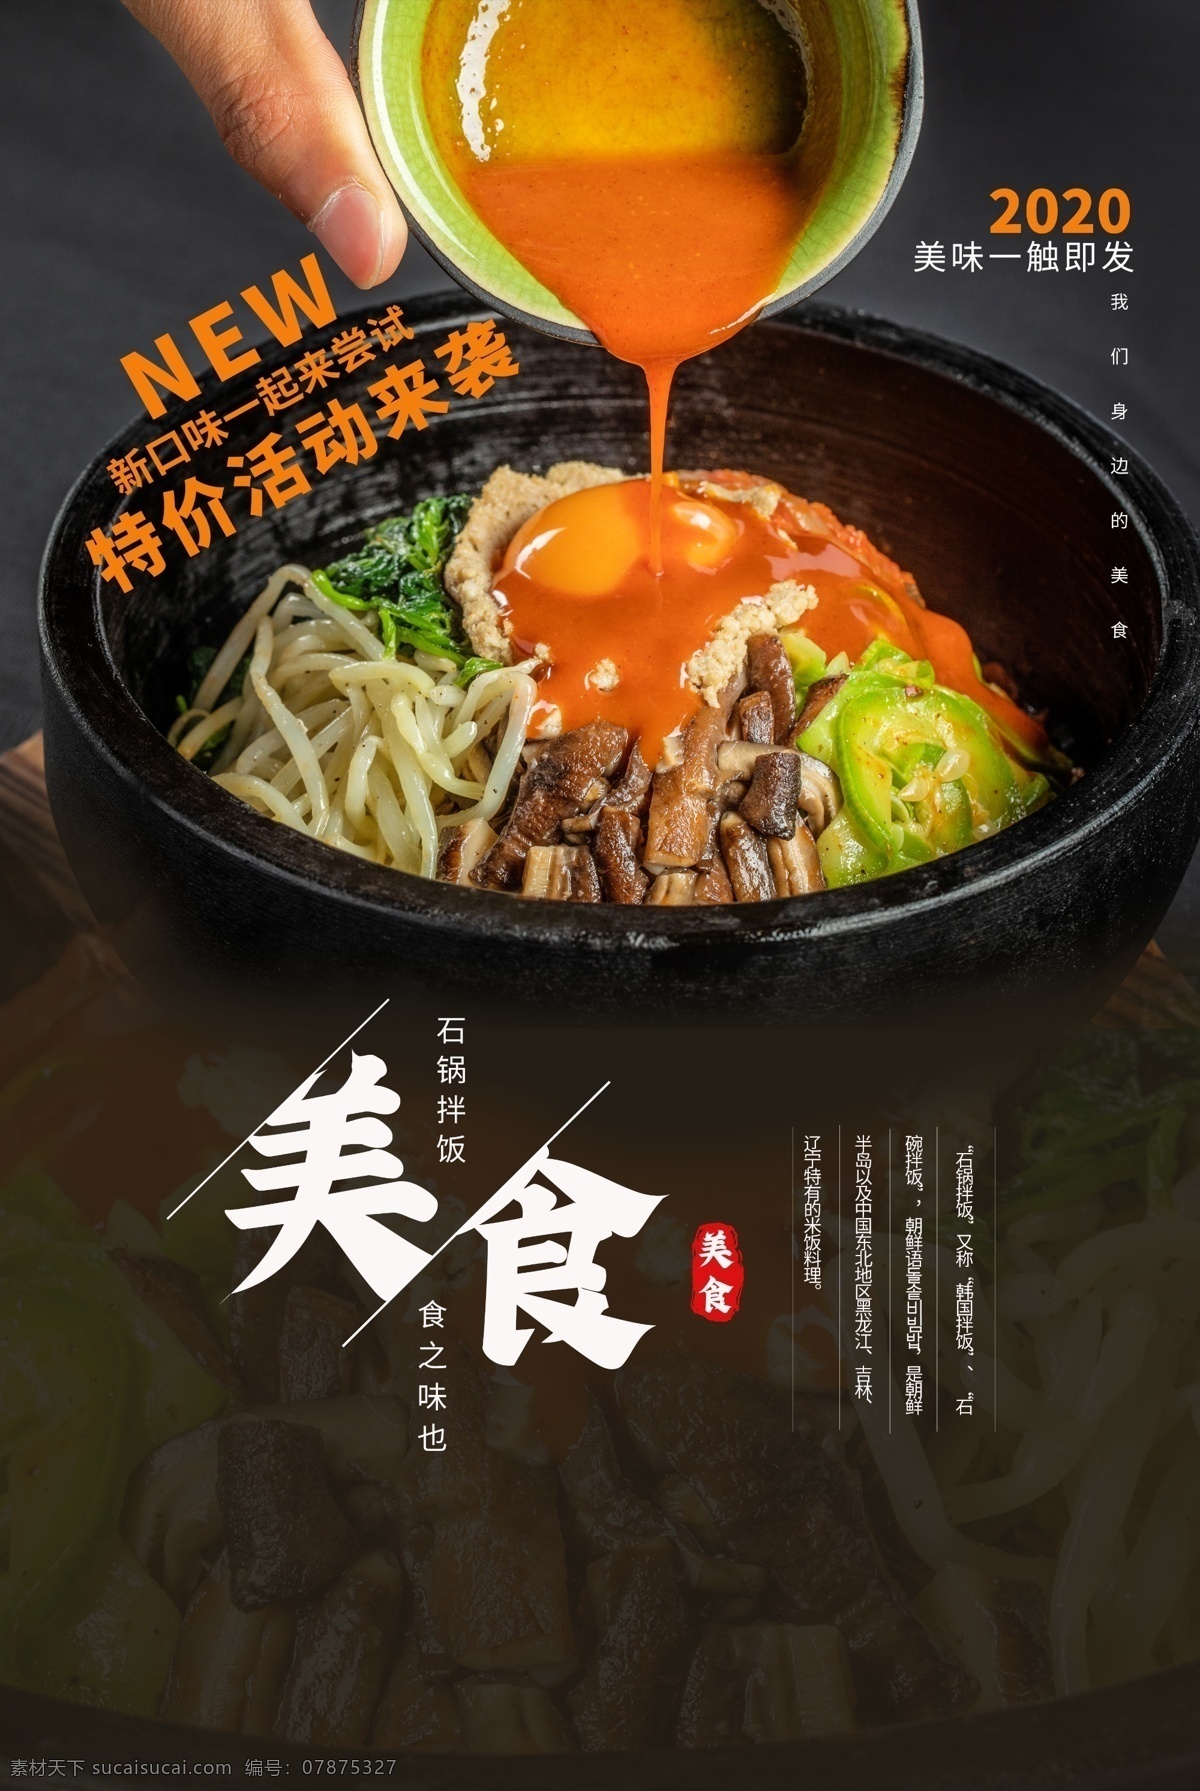 石 锅 拌饭 美食 食 材 活动 海报 素材图片 石锅拌饭 食材 餐饮美食 类